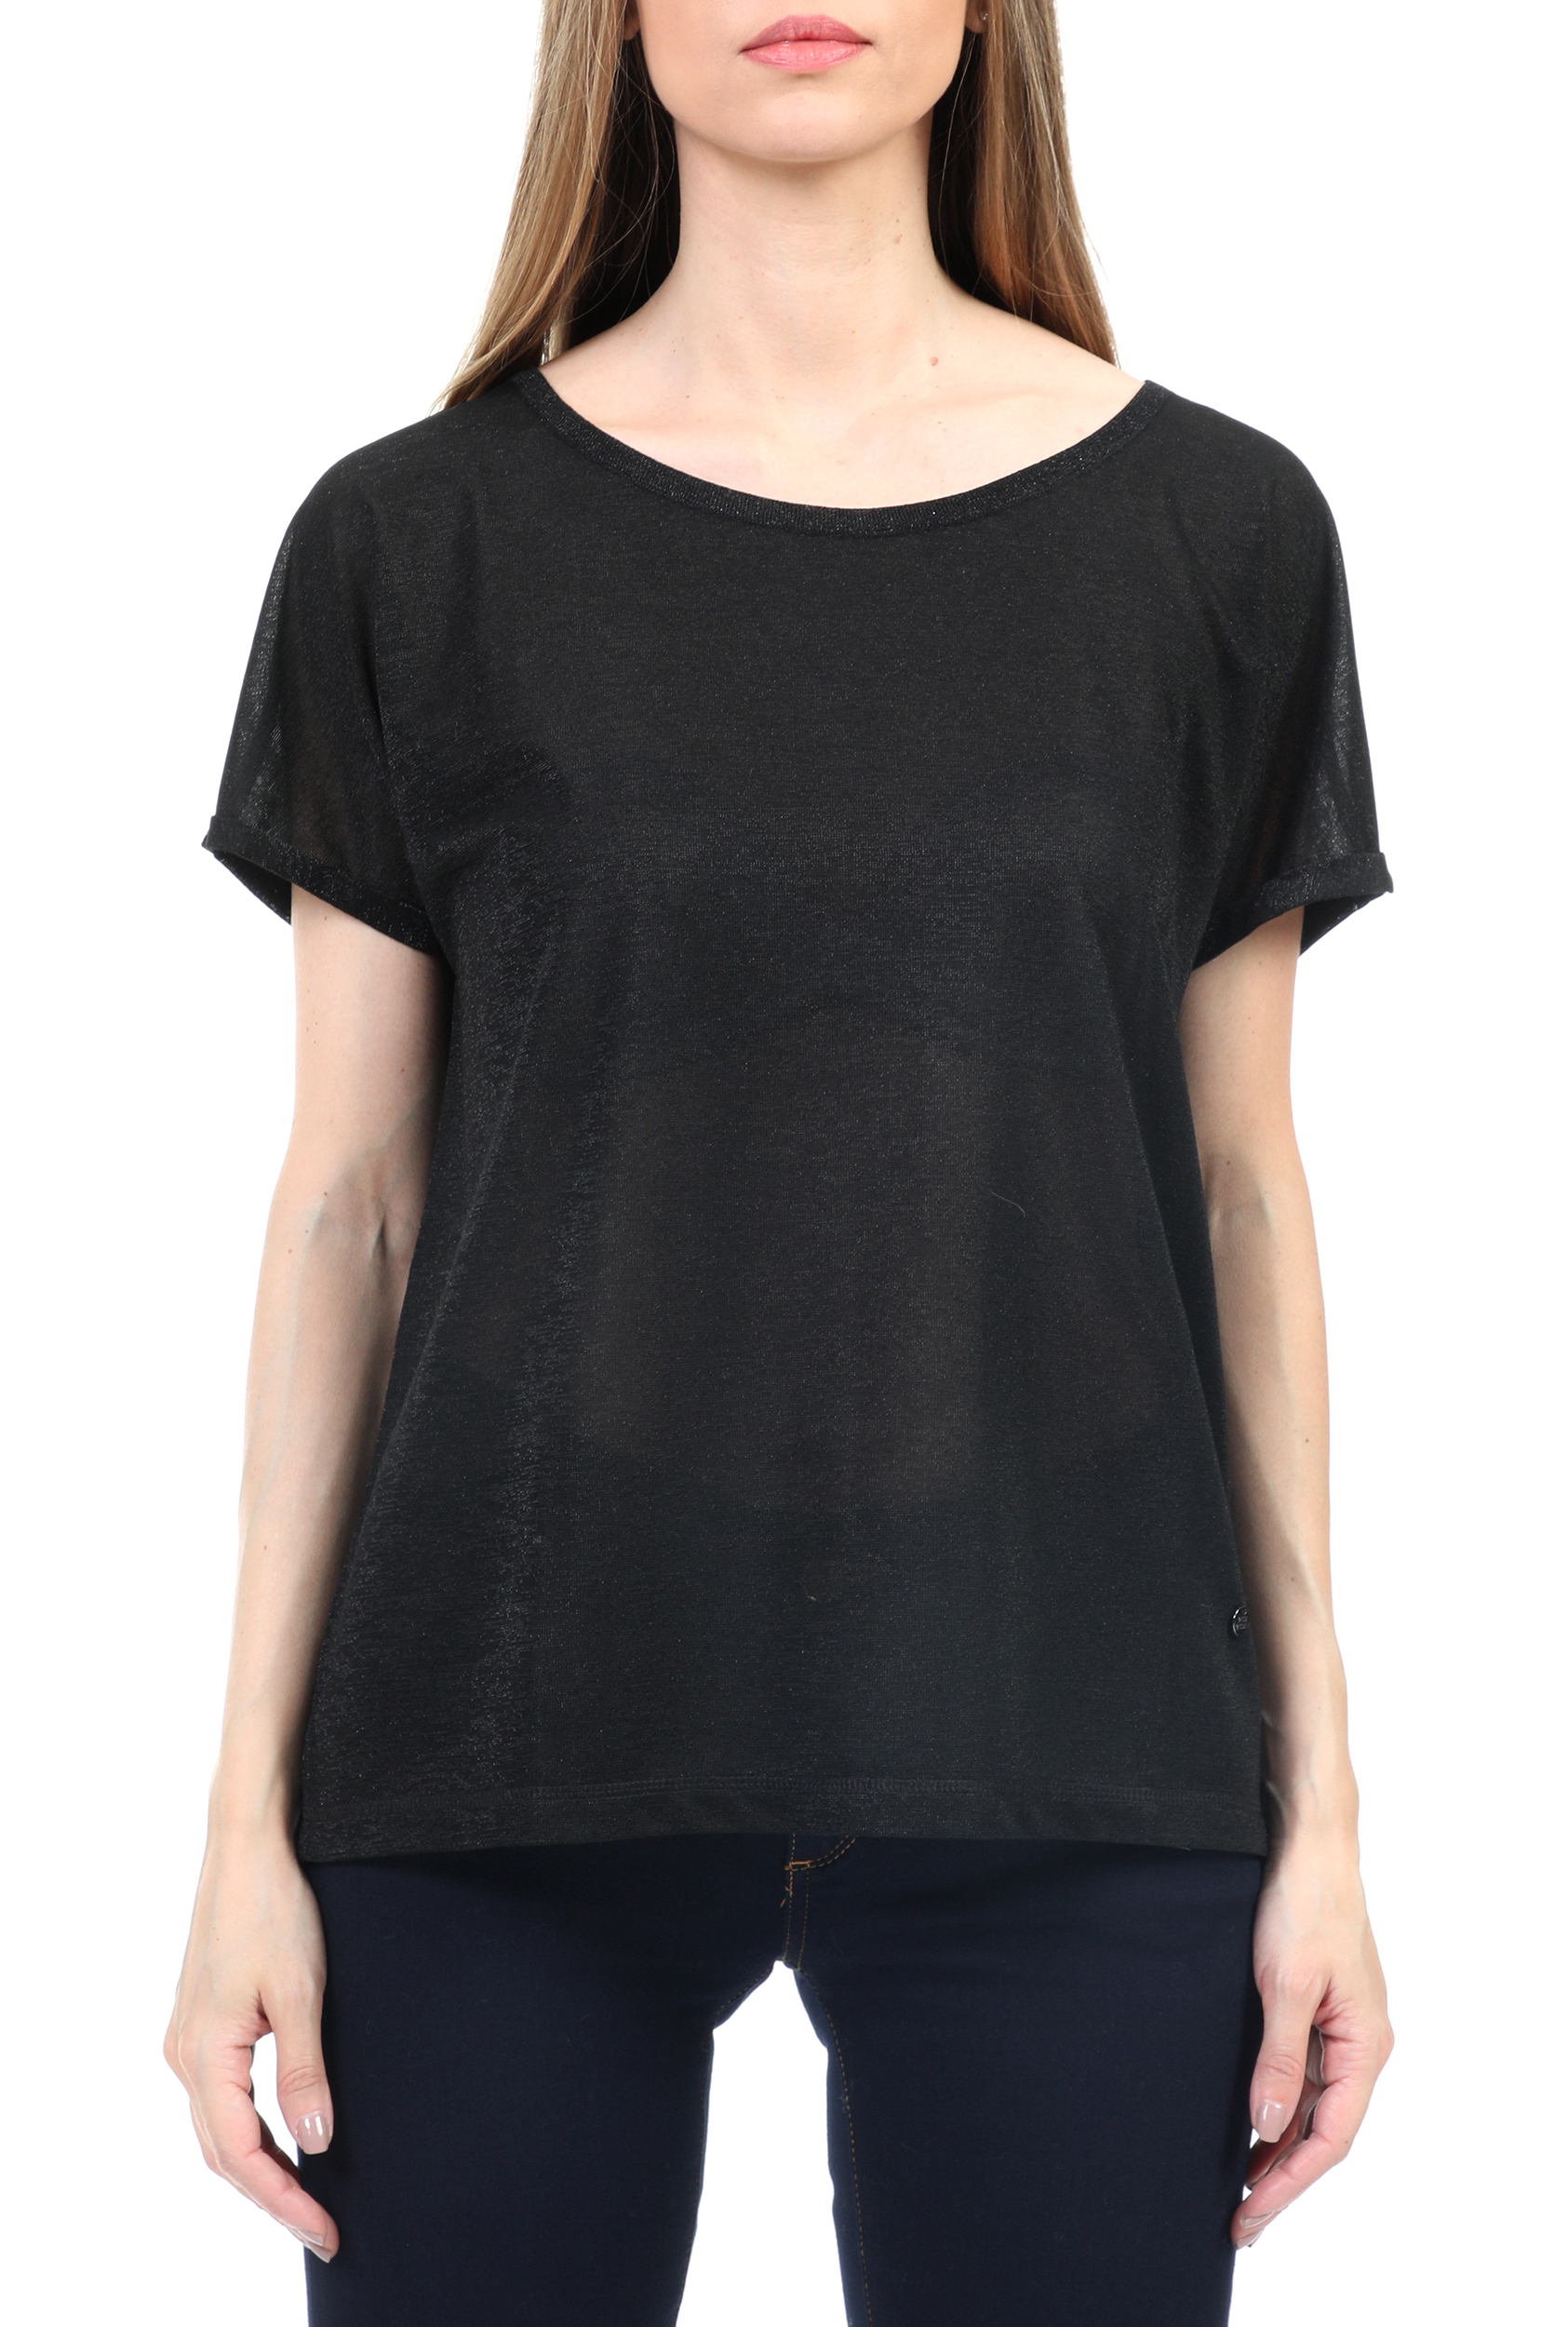 Γυναικεία/Ρούχα/Μπλούζες/Κοντομάνικες MOS MOSH - Γυναικεία κοντομάνικη μπλούζα MOS MOSH Kay Tee μαύρο